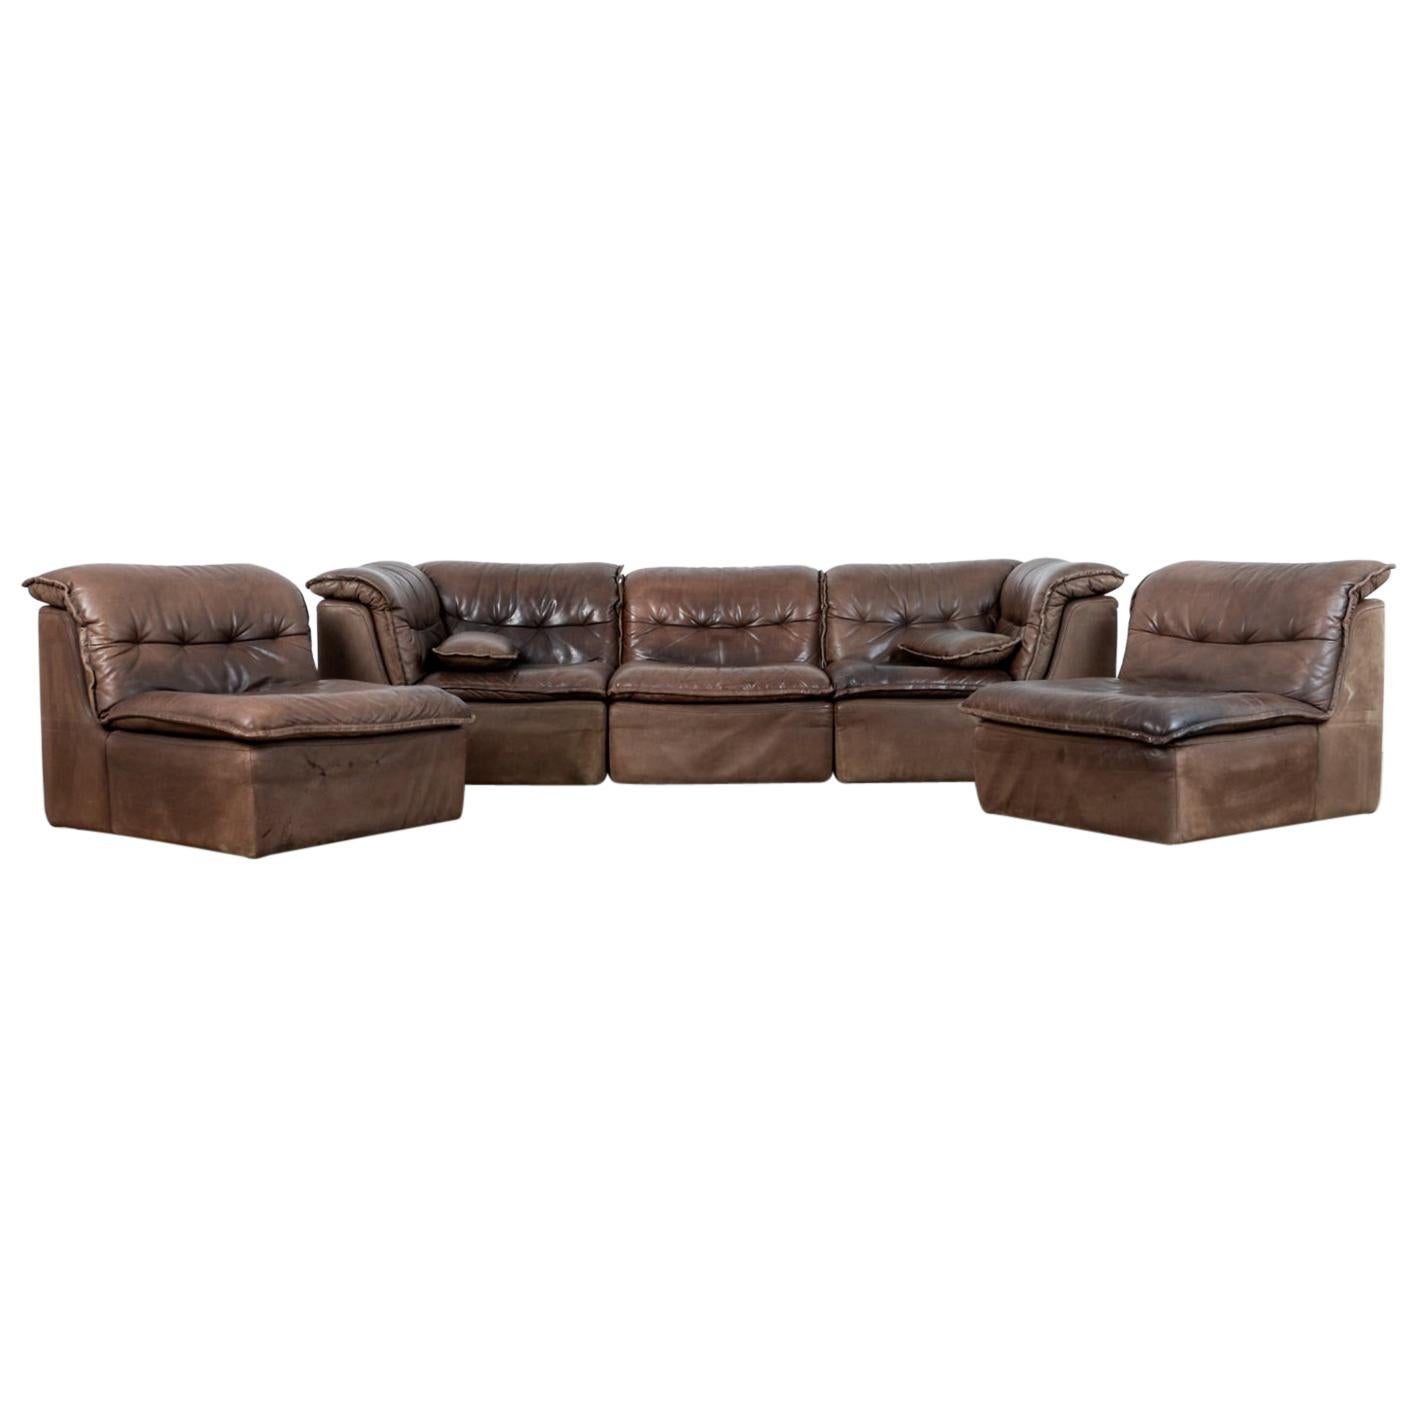 1970s Leather Sofa Set